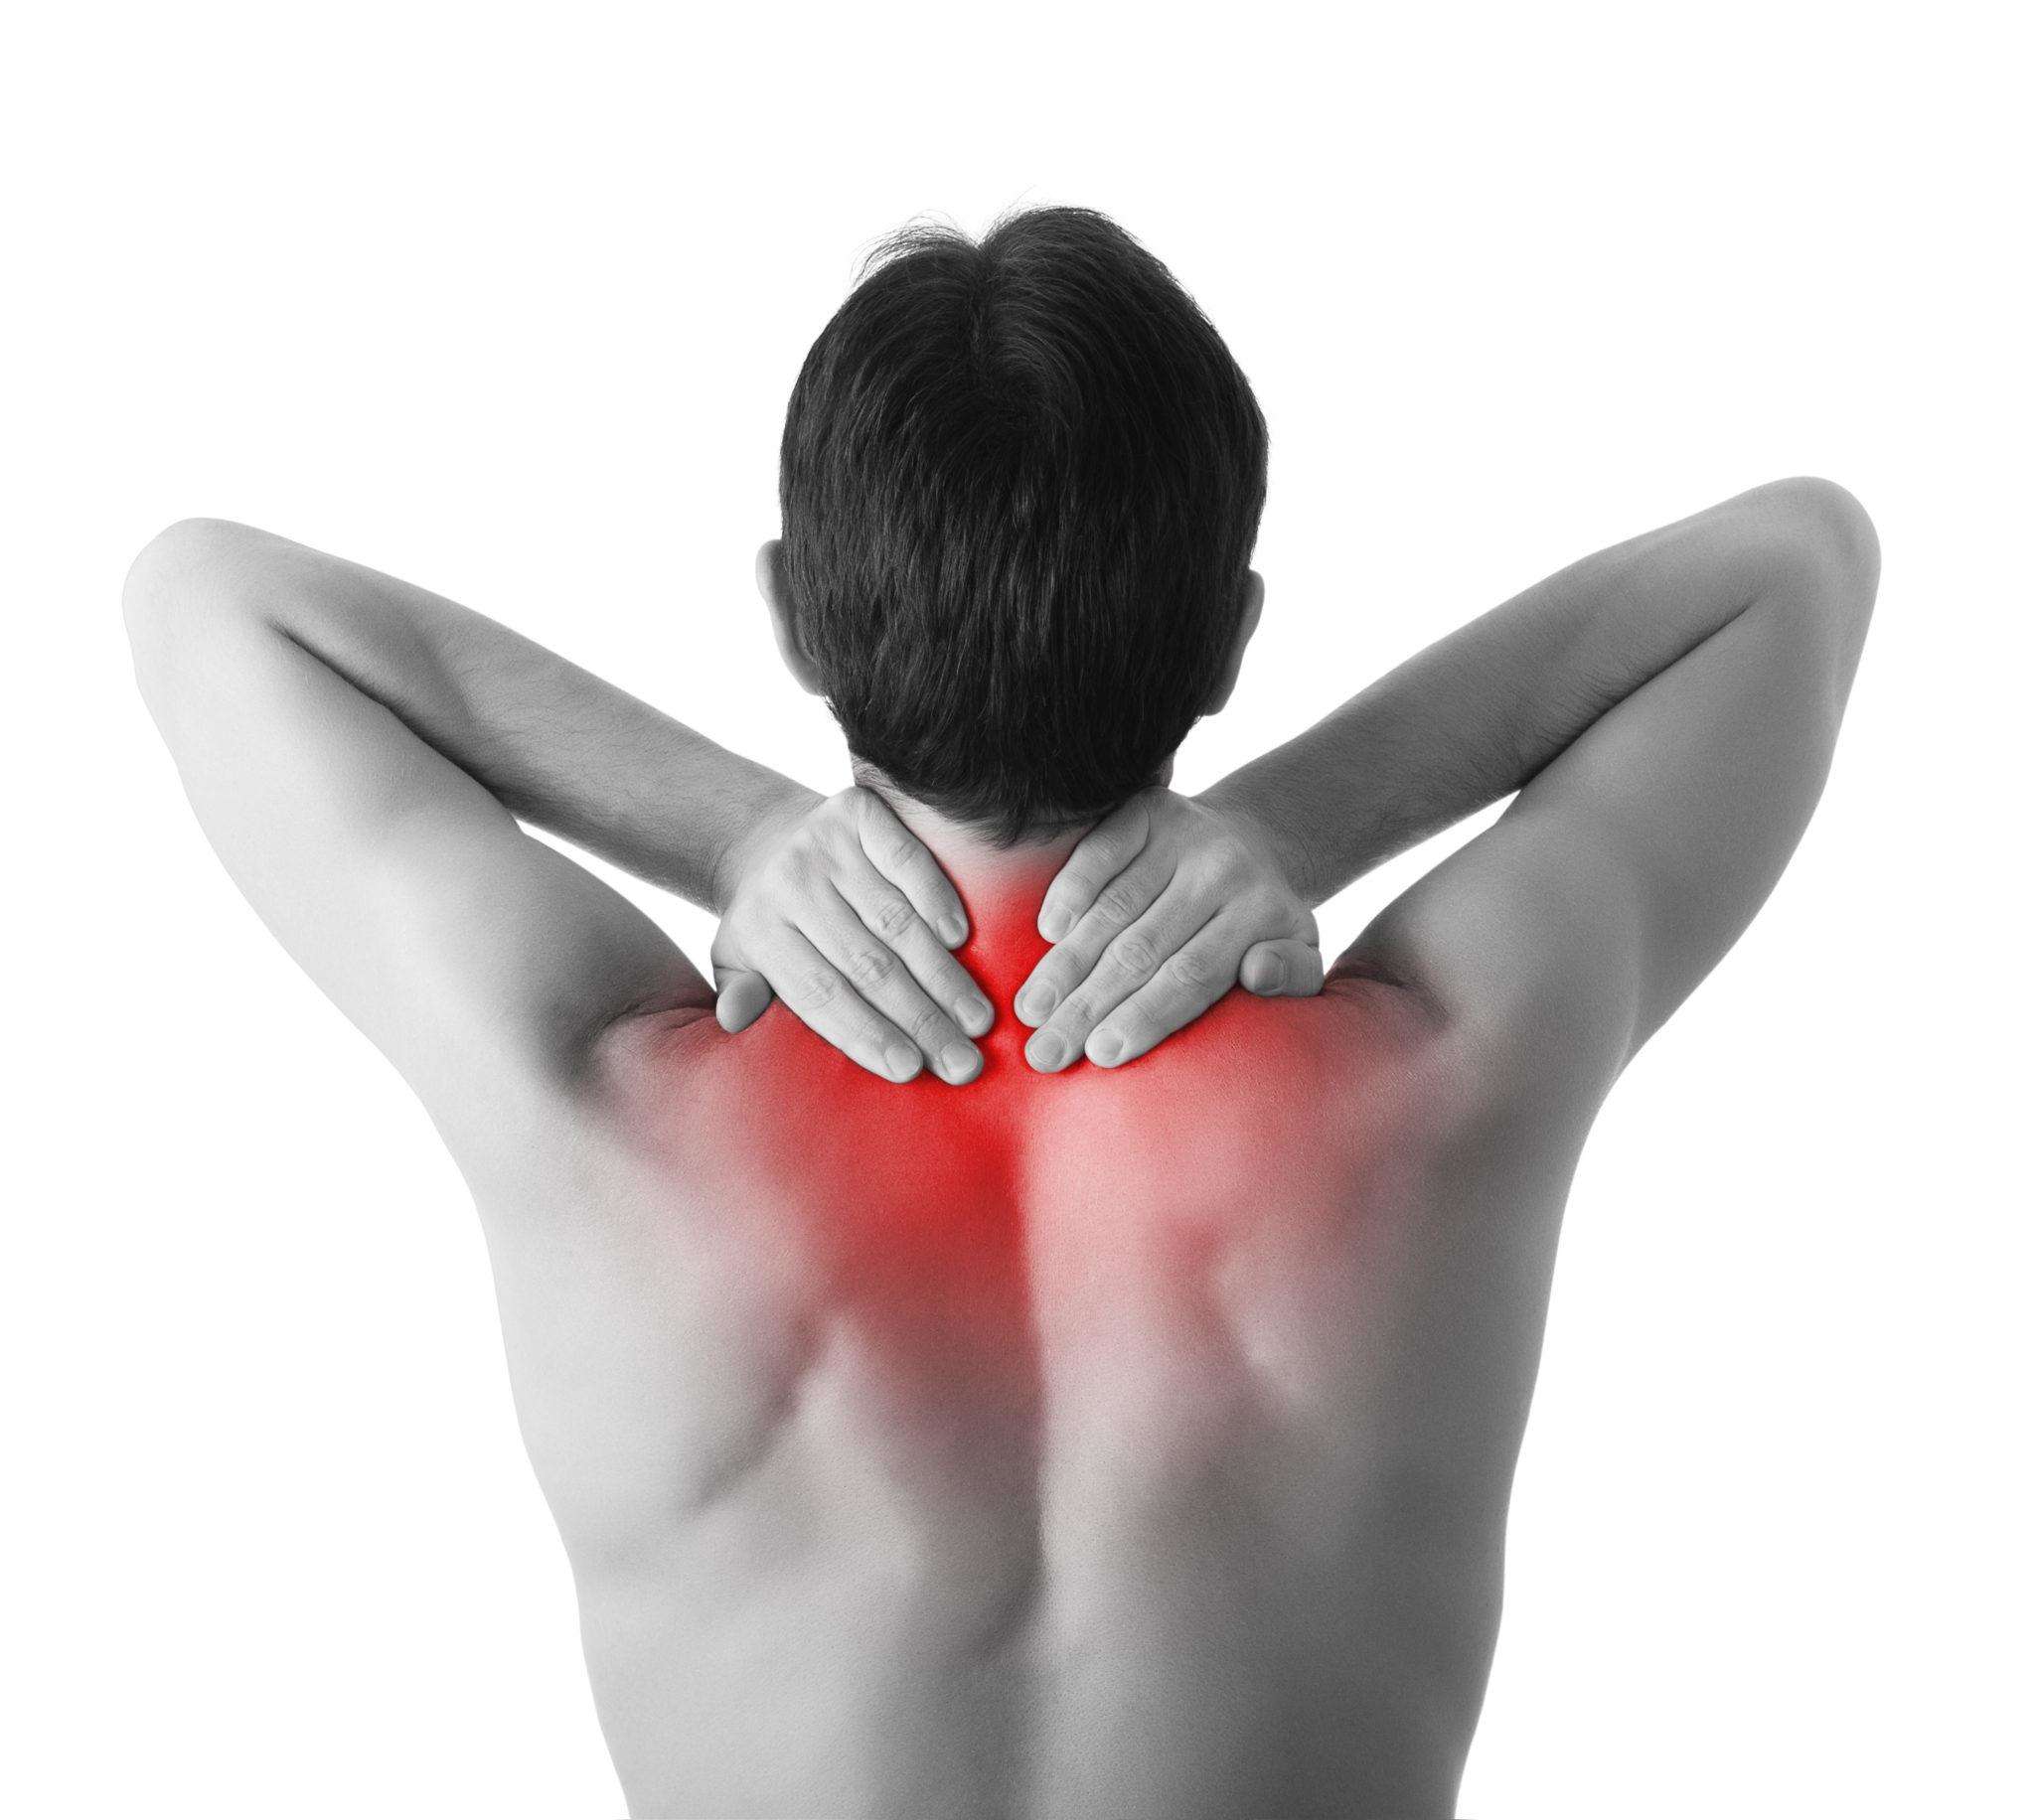 मांसपेशियों में दर्द को न करें नजरअंदाज हो सकती है बड़ी परेशानी